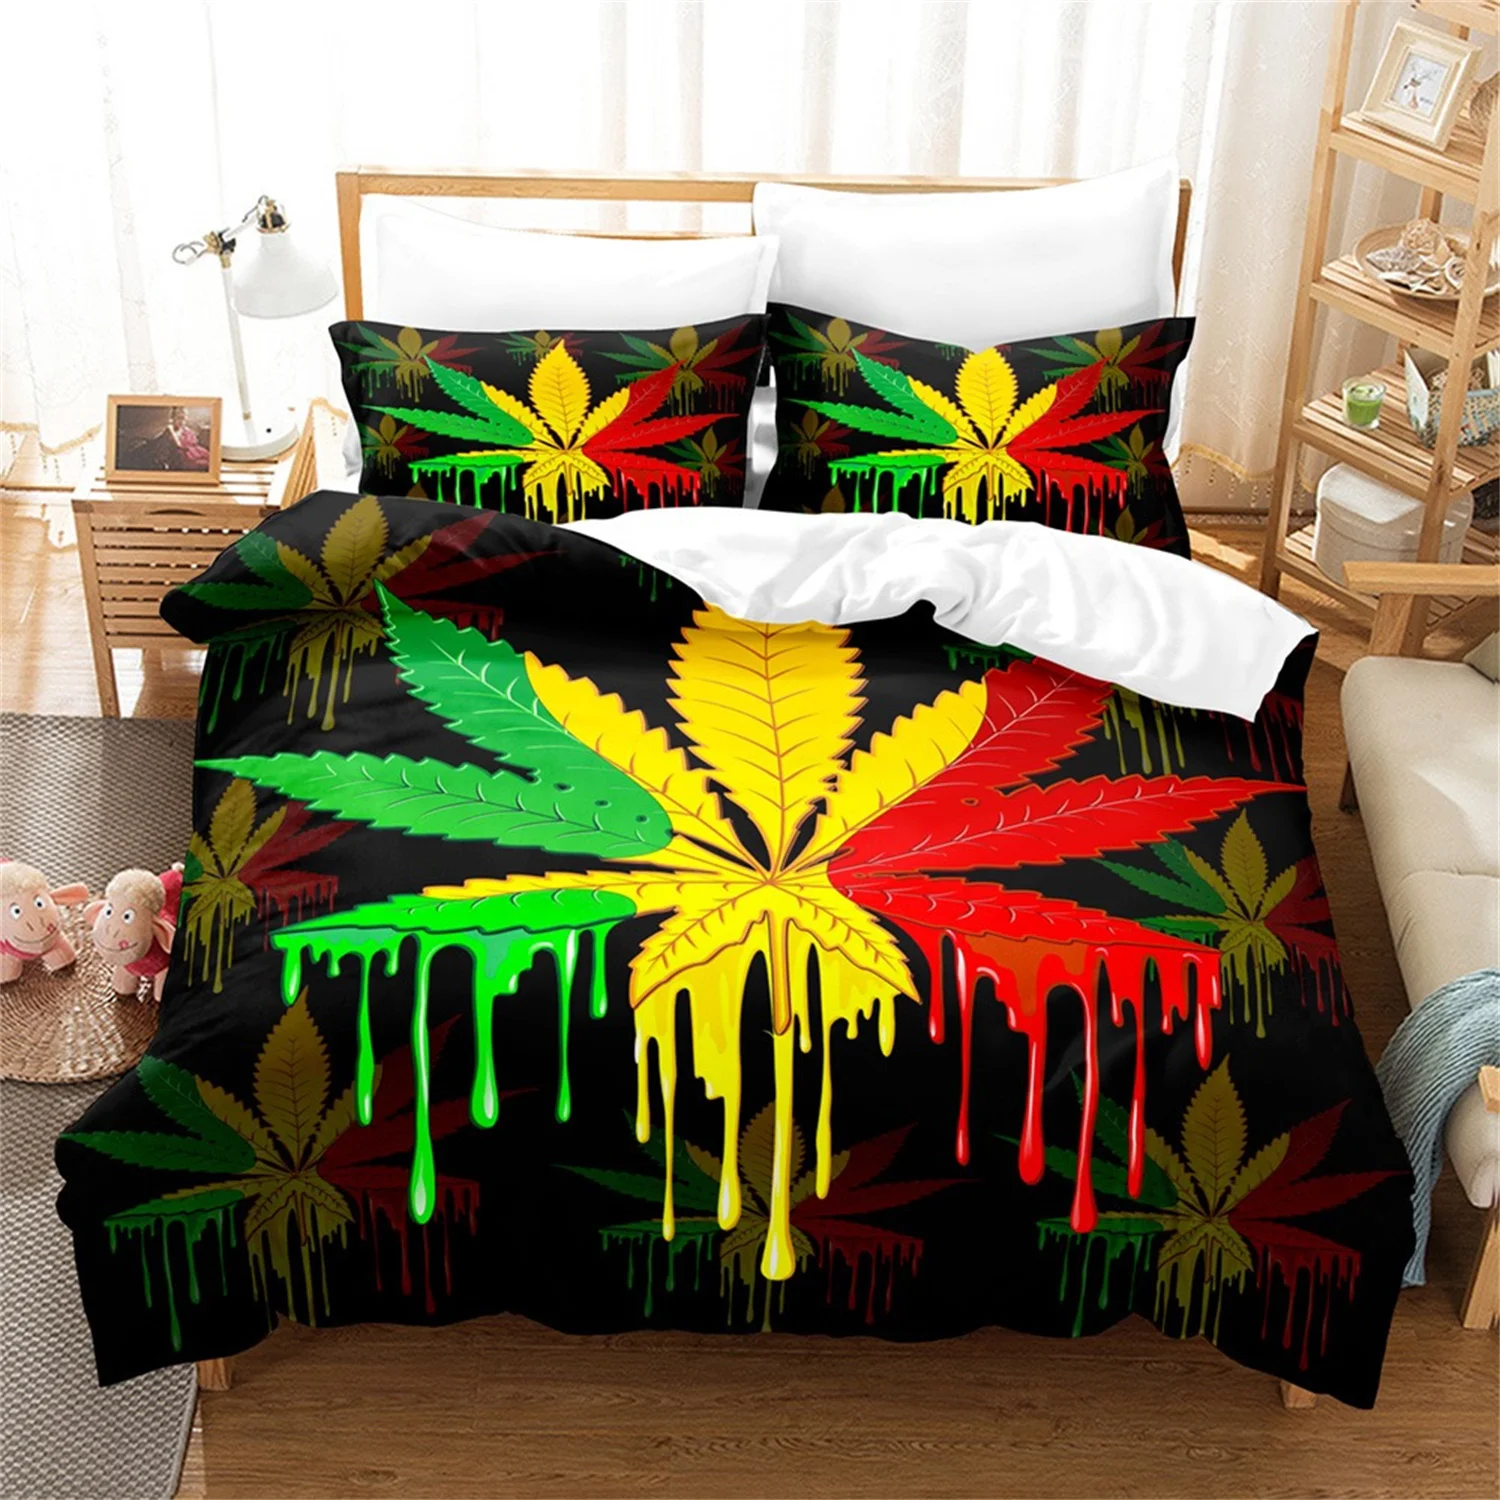 

Пододеяльник с листьями марихуаны, набор красочных планшетов, 3 шт., мягкое одеяло из микрофибры, чехол для спальни, королевы, 220x240 см